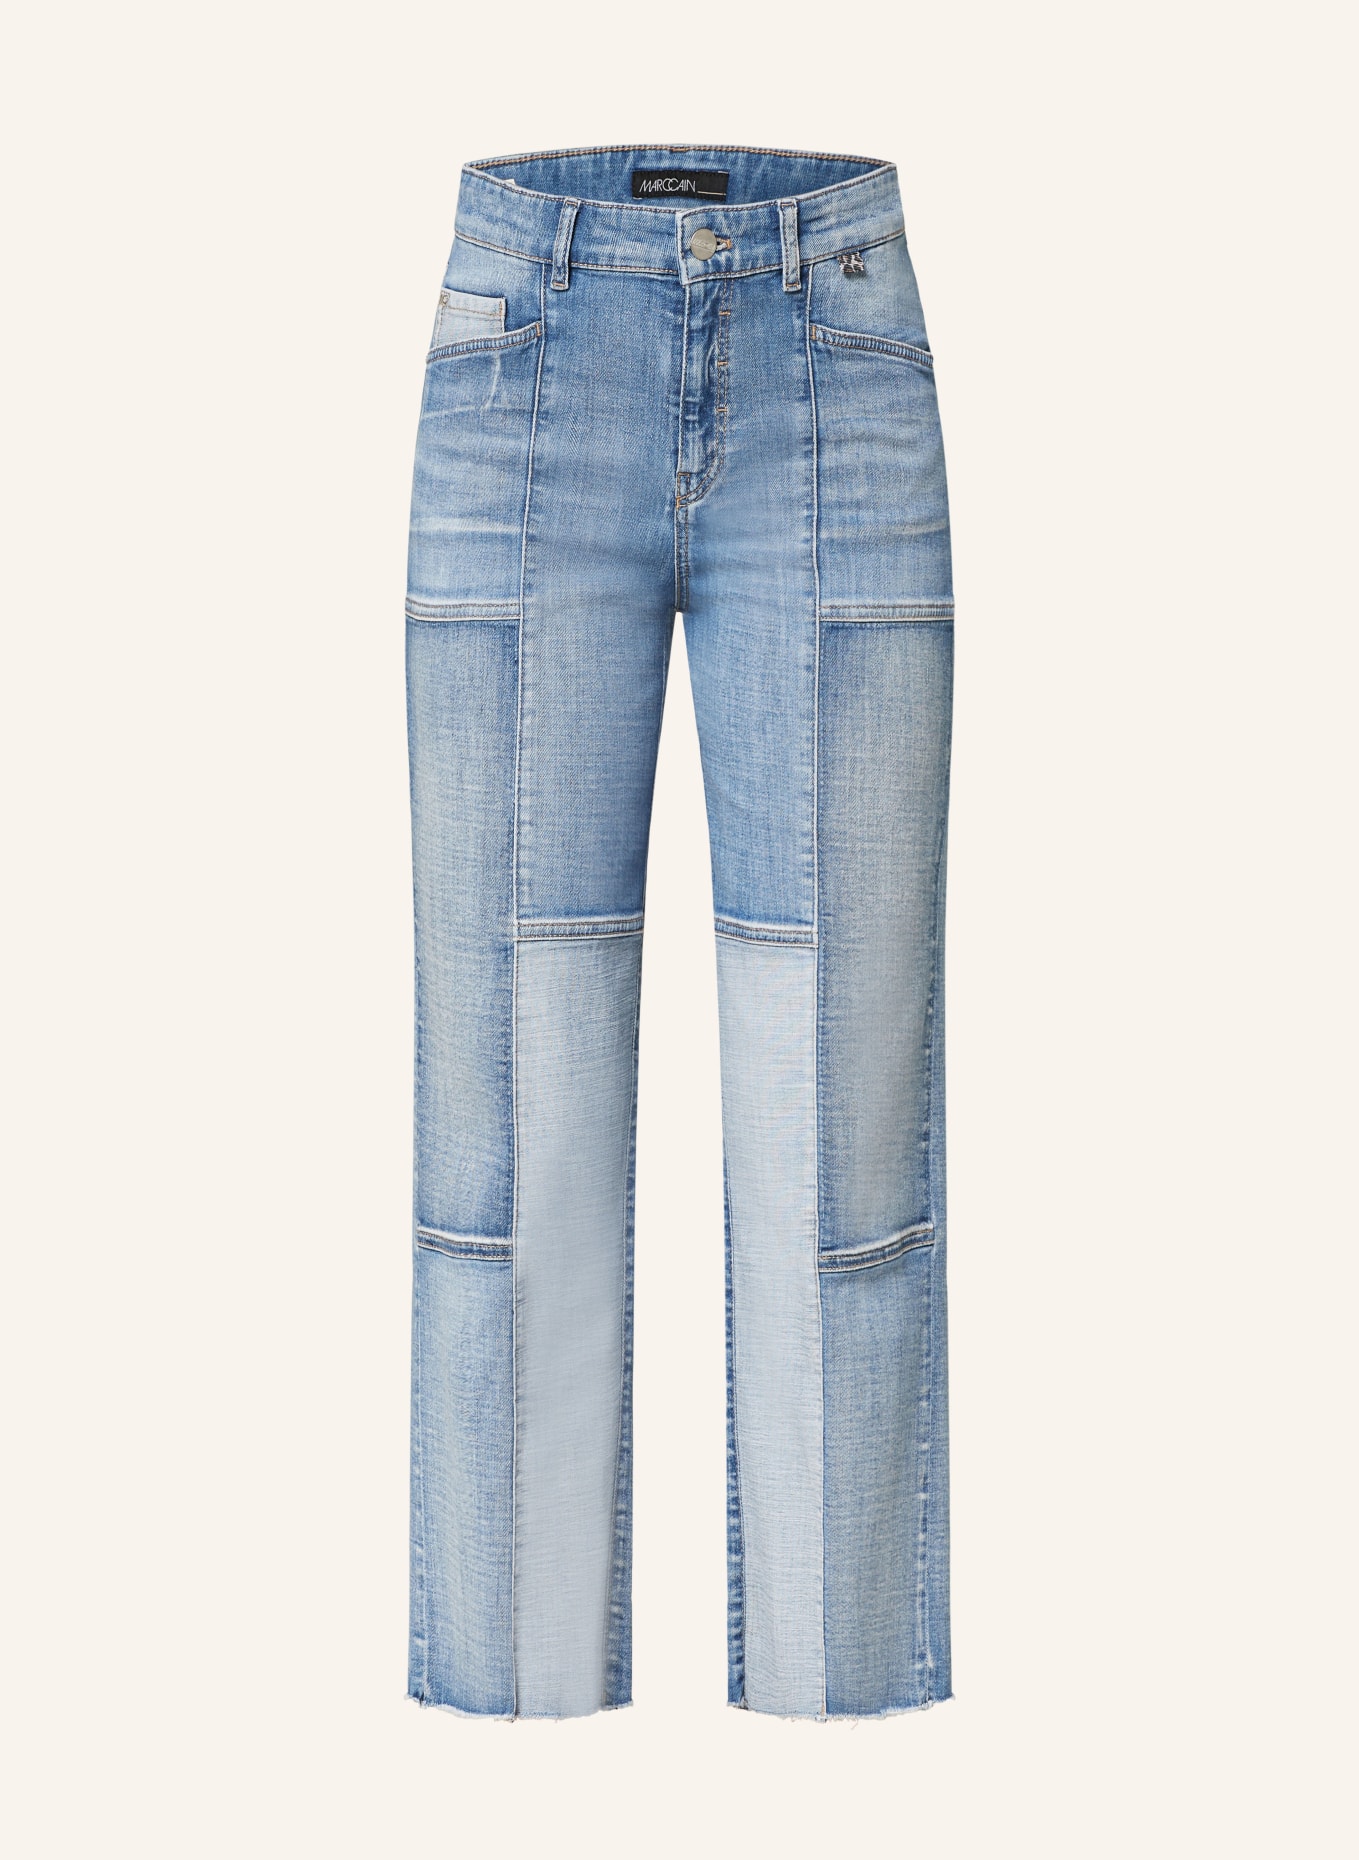 MARC CAIN 7/8 jeans WYLIE, Color: 353 blue denim (Image 1)